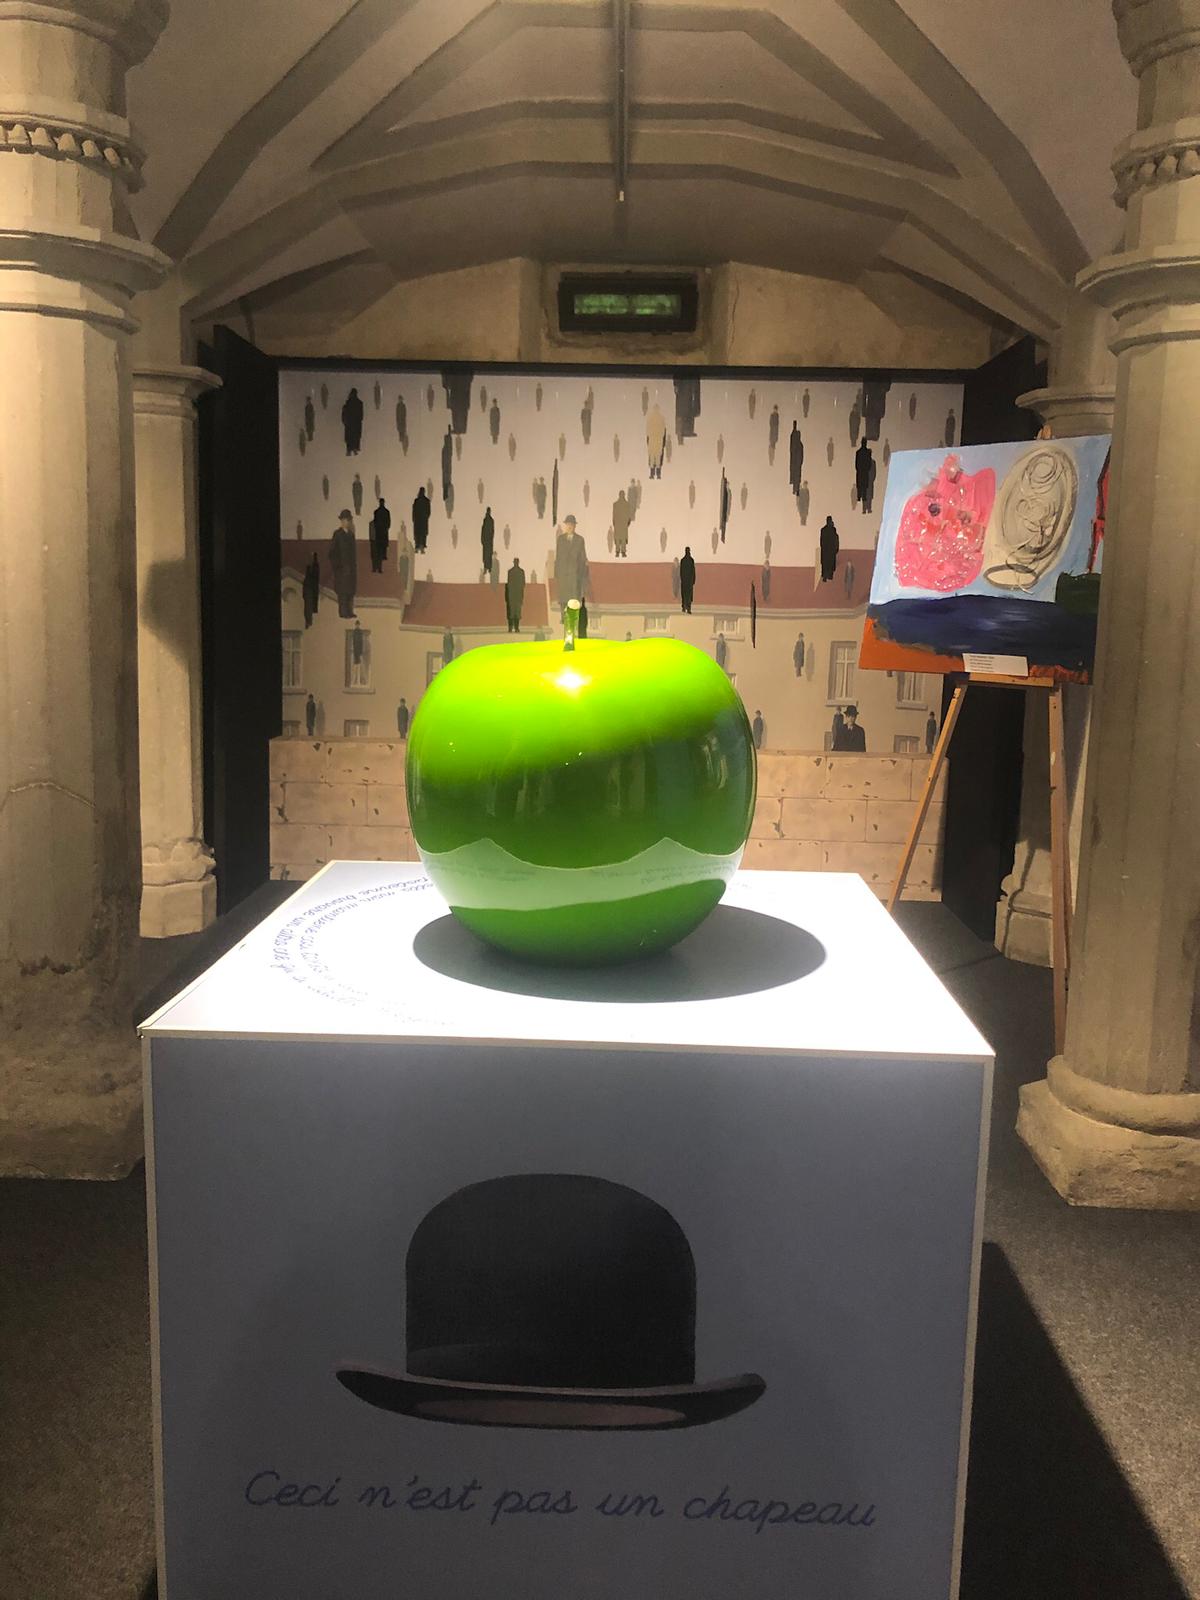 Ante sala da exposição com objetos que remetem as obras de Magritte (Imagem: Luiza Vegini)